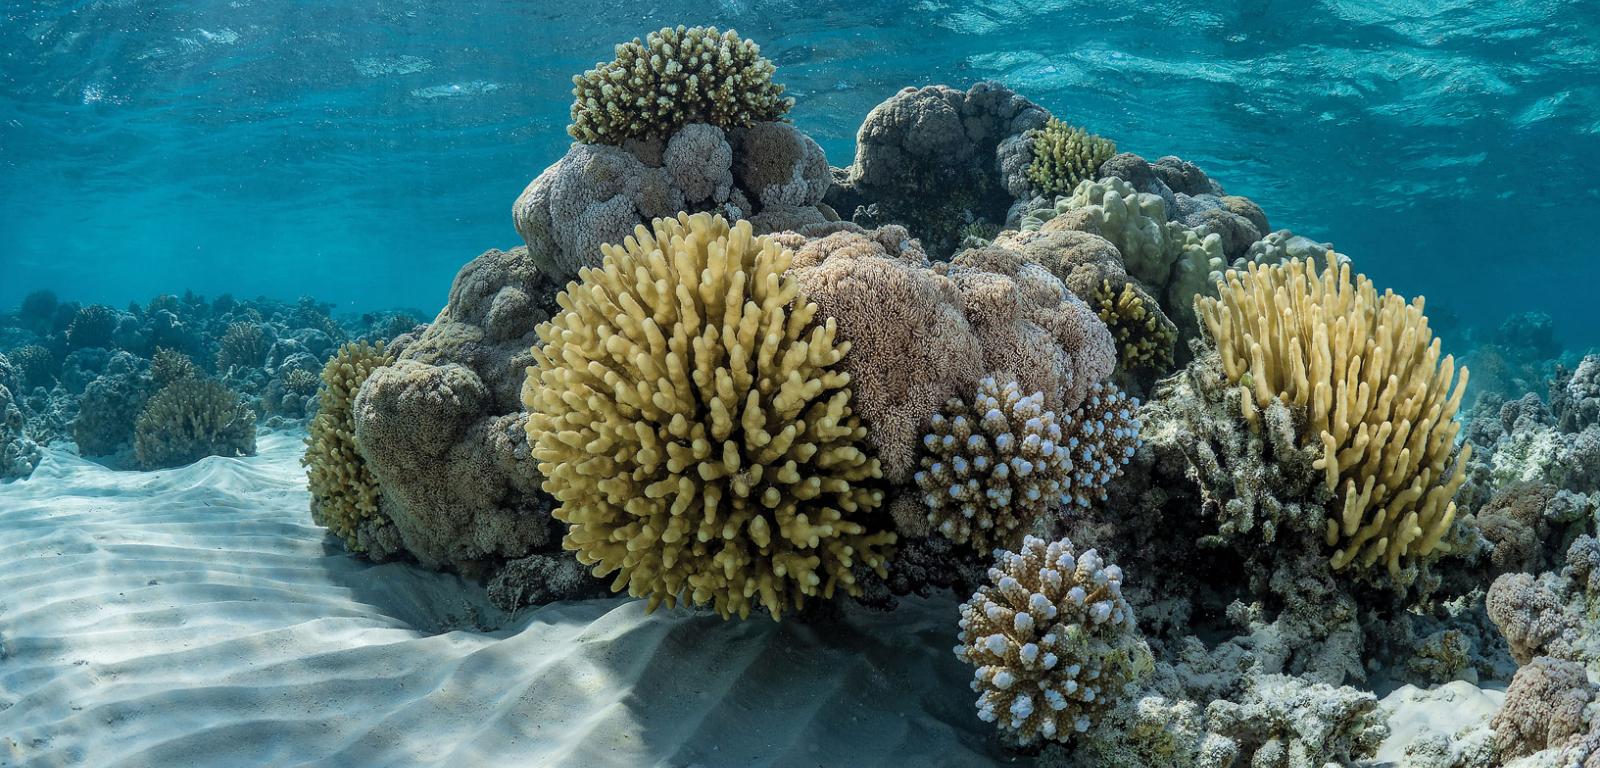 Koralowce z Morza Czerwonego tolerują bardzo ciepłą wodę, ale nawet one zaczynają doświadczać stresu związanego ze zmianą klimatu.